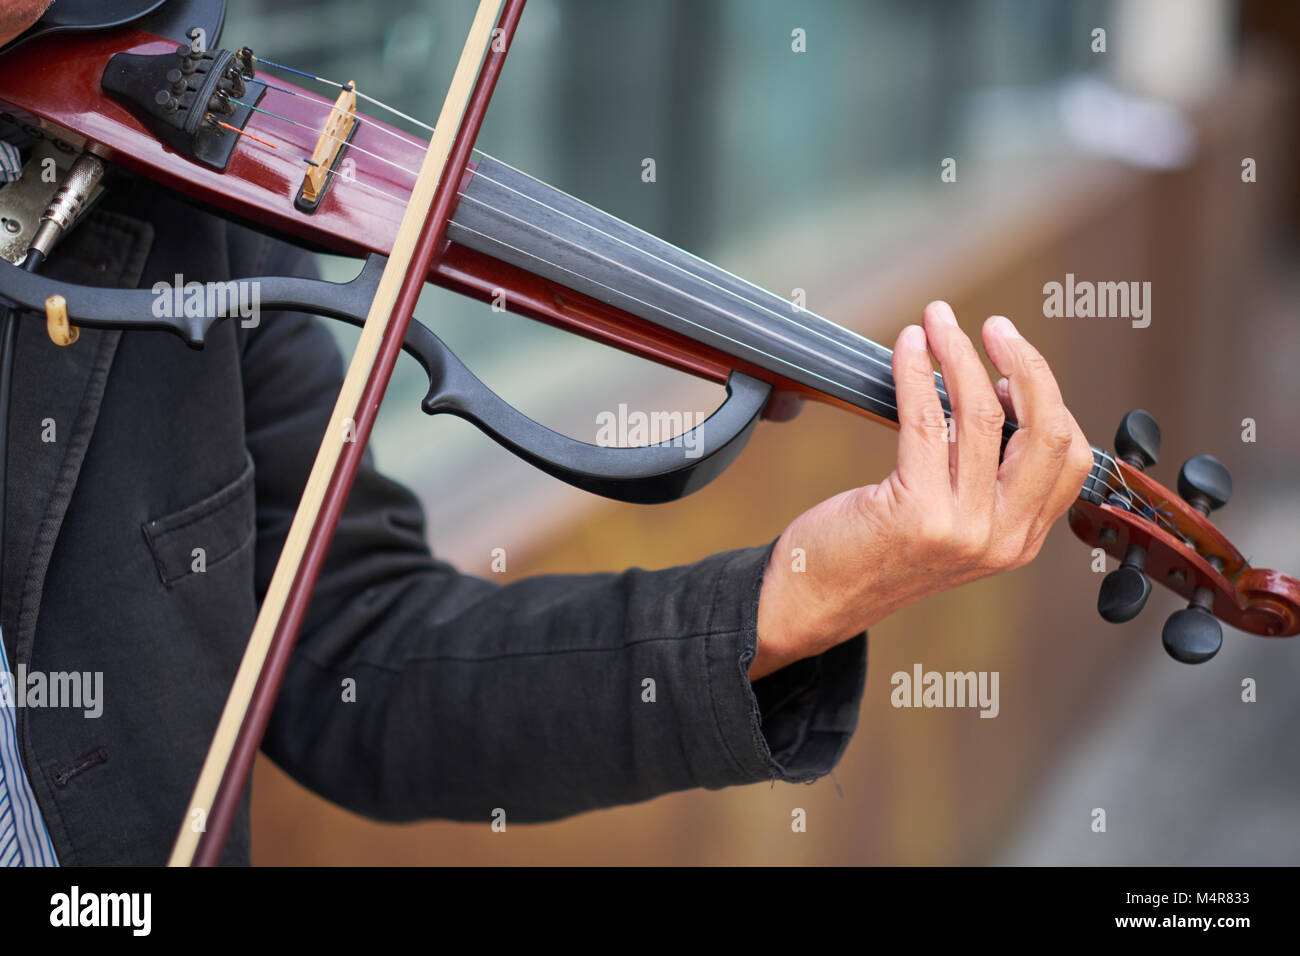 Violino moderno immagini e fotografie stock ad alta risoluzione - Alamy